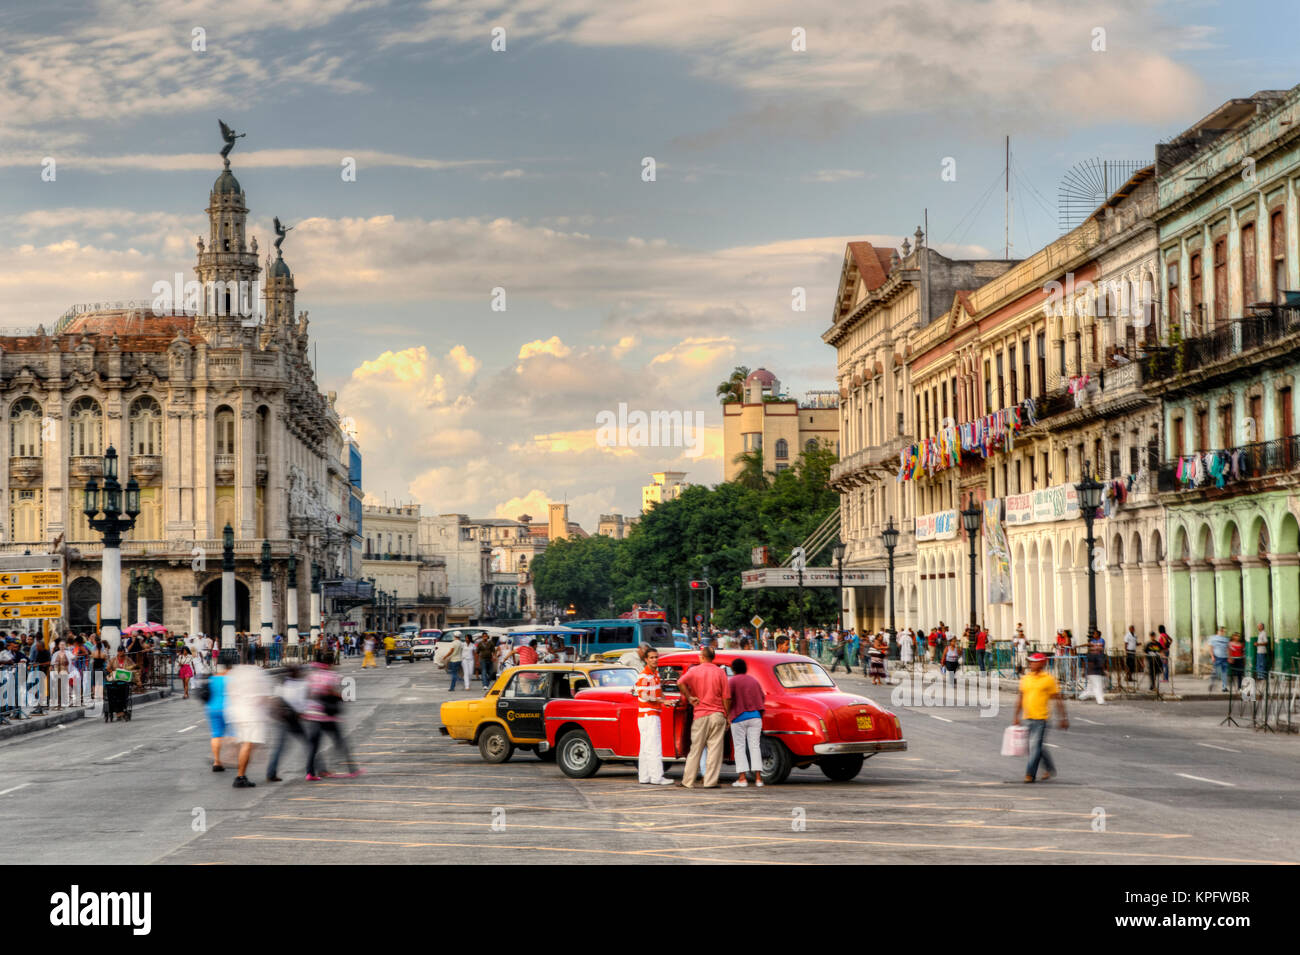 Taxi near capital building, Havana, Cuba Stock Photo